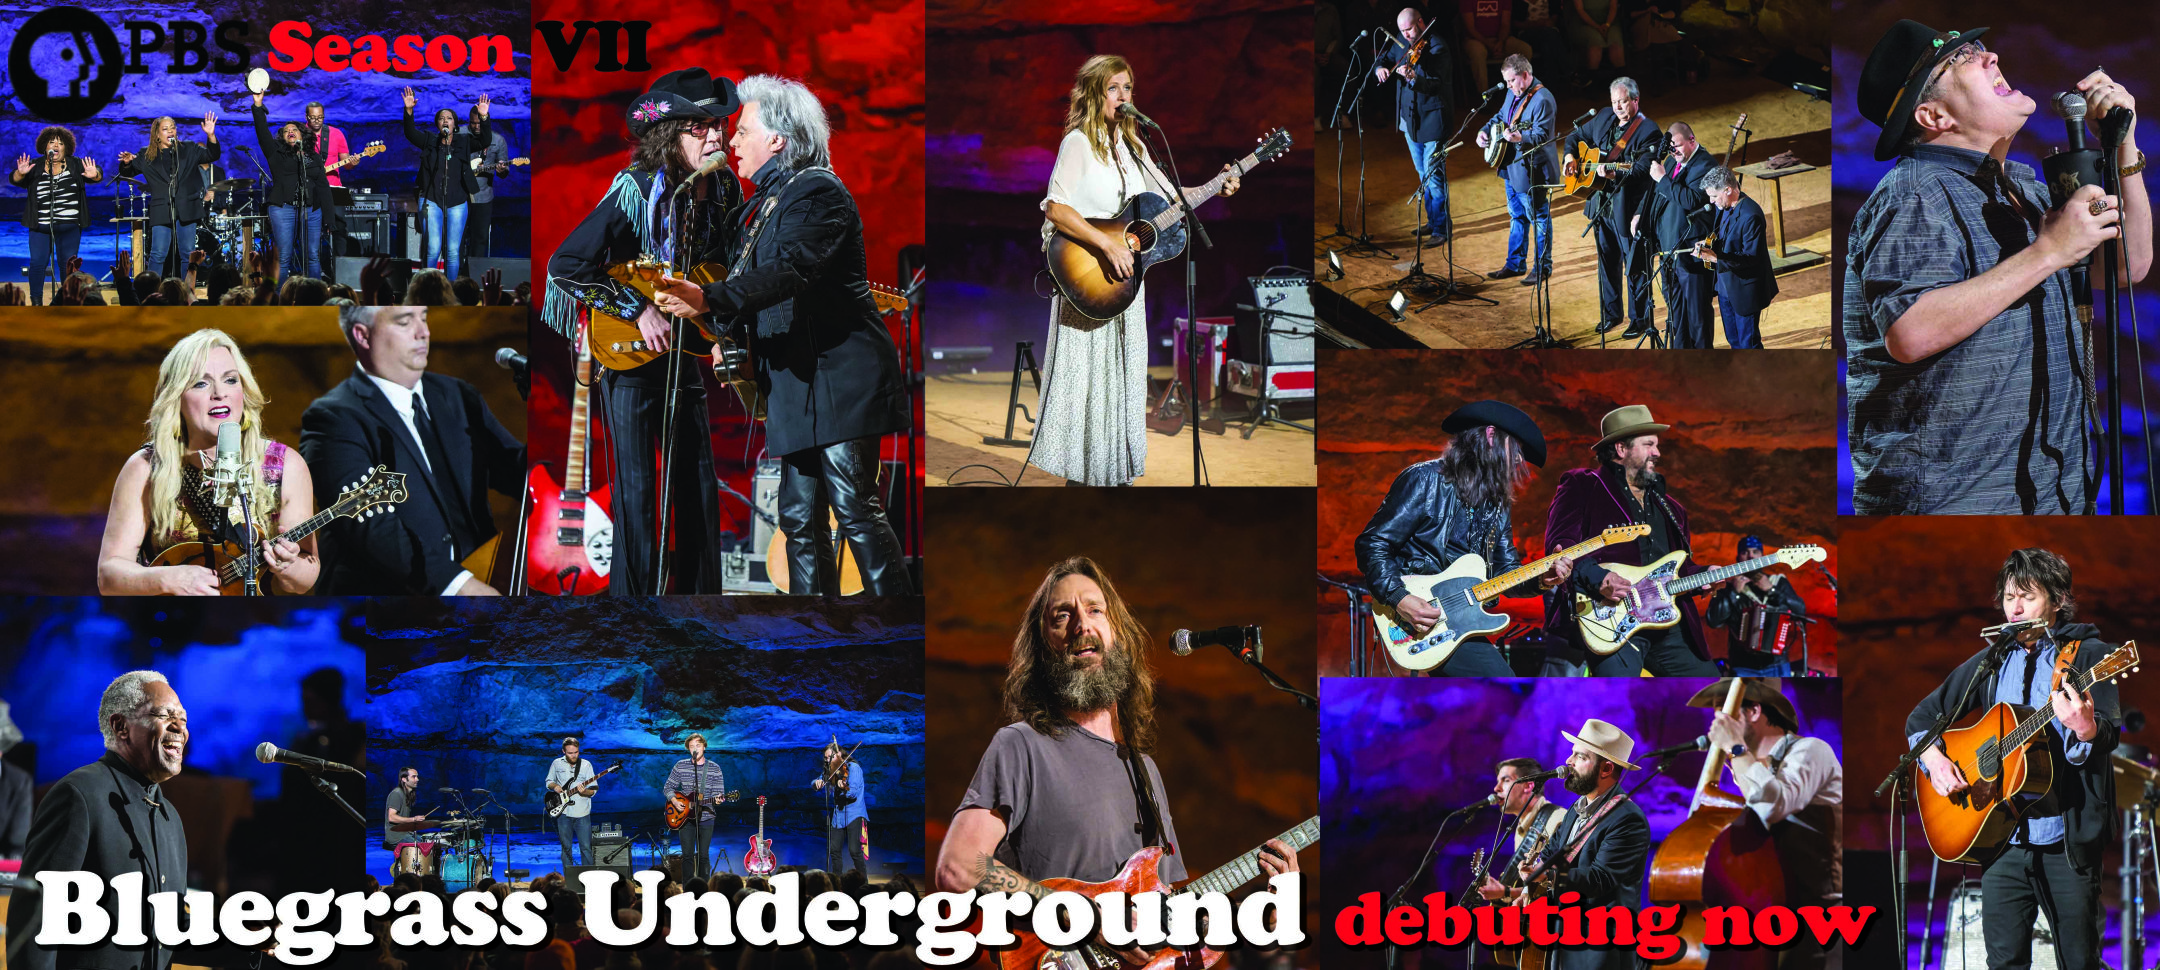 Bluegrass Underground Returns to PBS